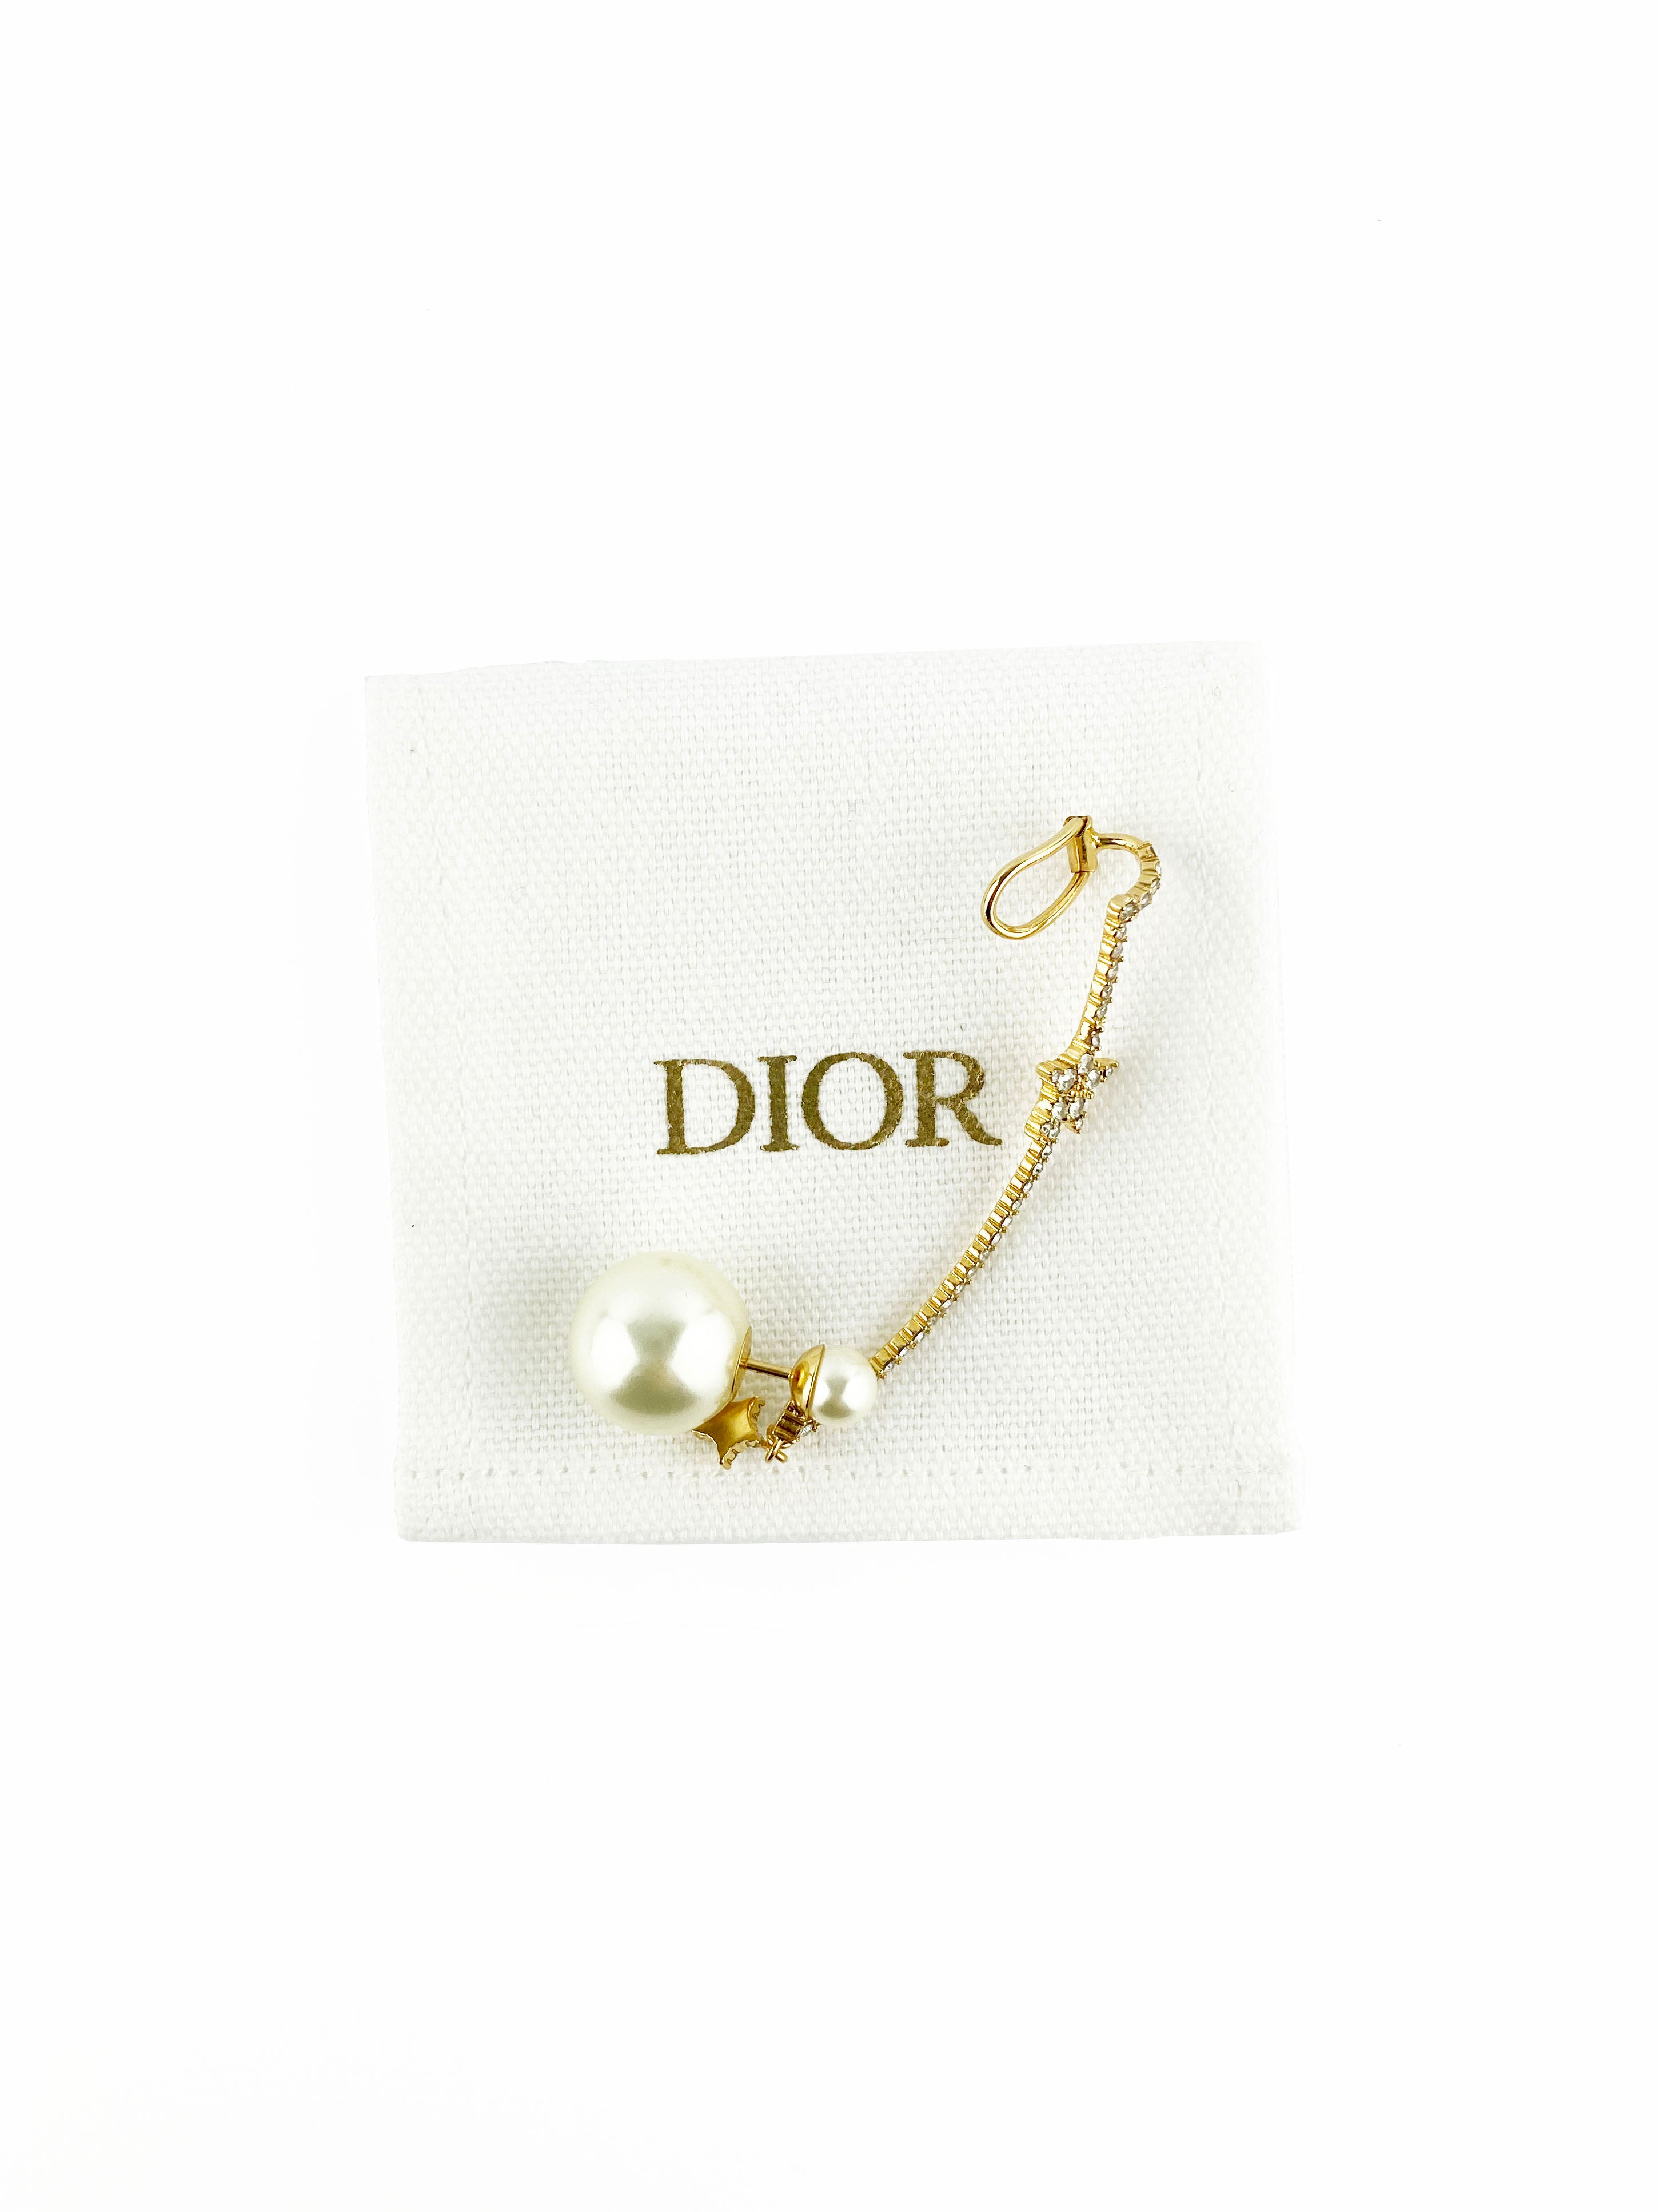 dior-pearl-earring-2.jpg